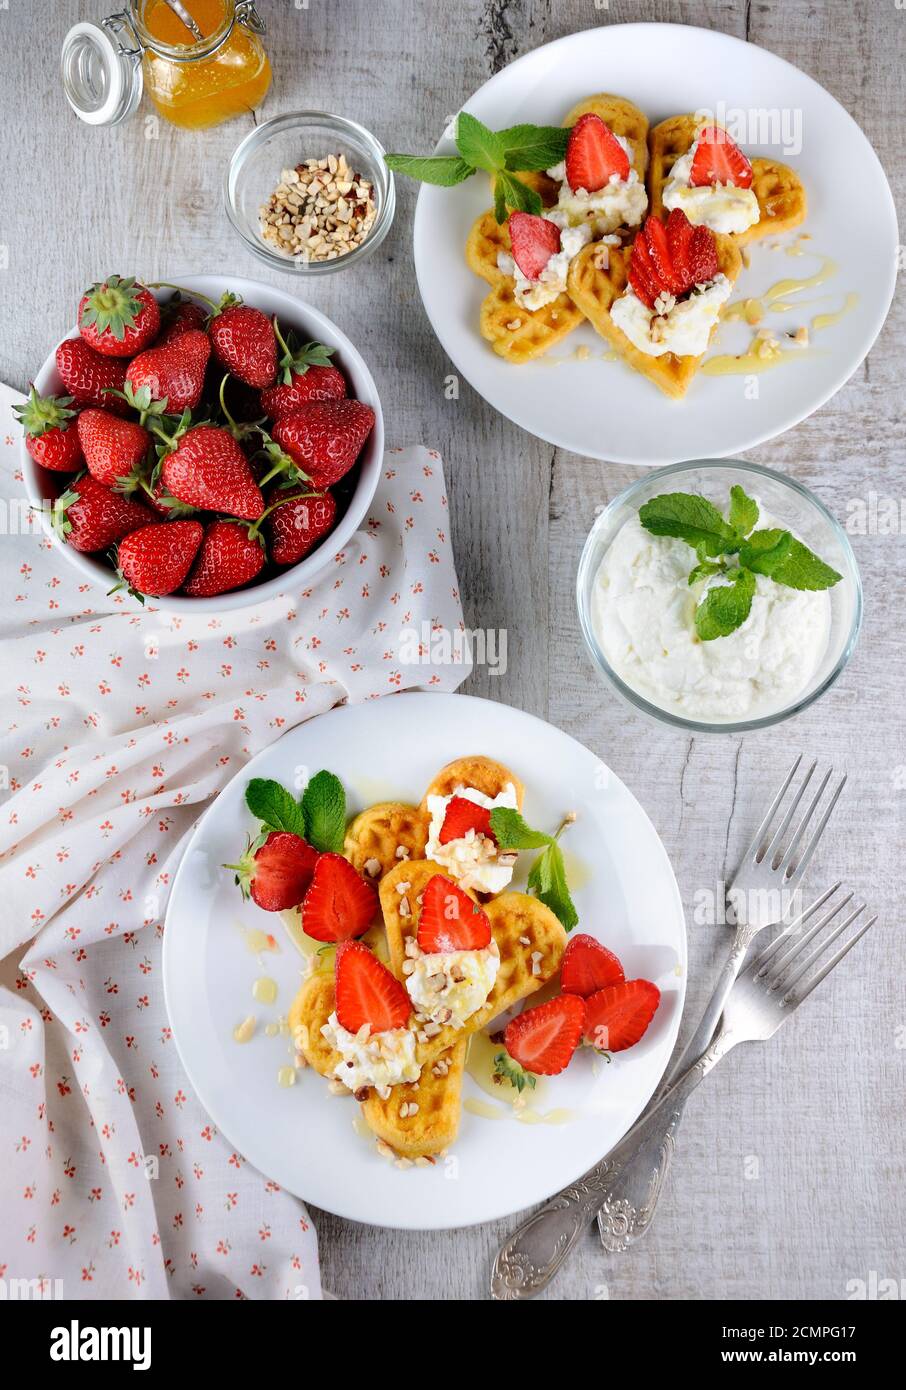 Delikate, köstliche belgische Waffeln mit Schlagsahne, Erdbeeren, aromatisiert mit p Stockfoto